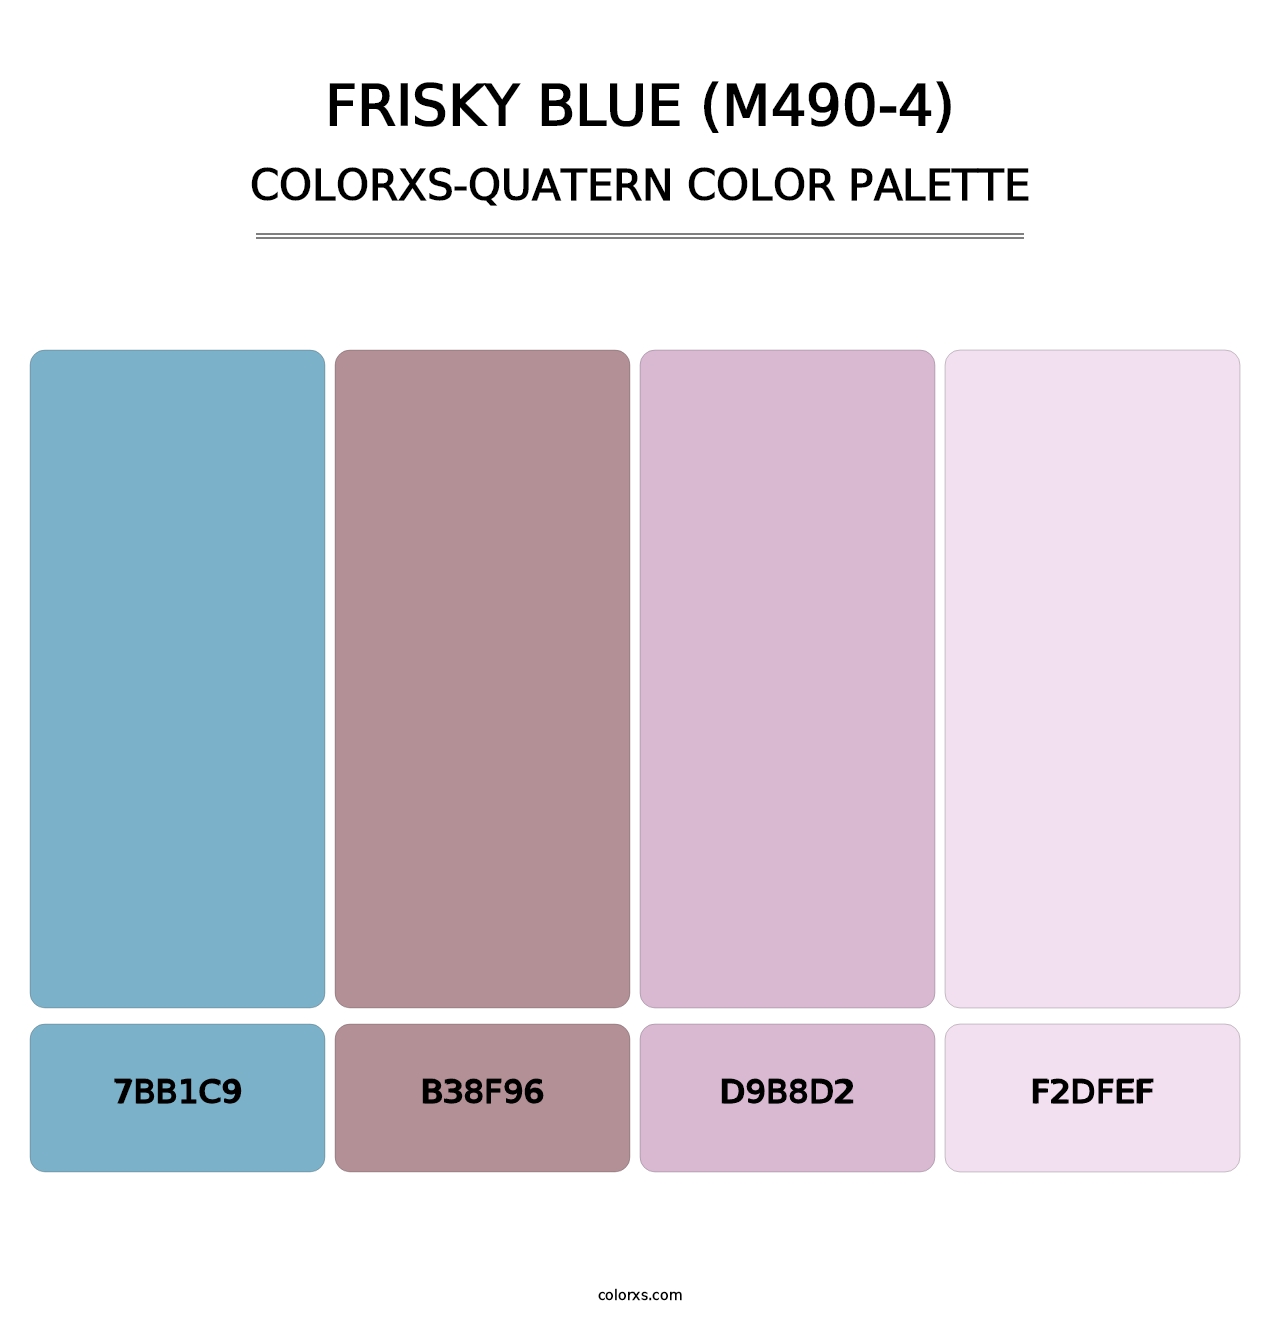 Frisky Blue (M490-4) - Colorxs Quatern Palette